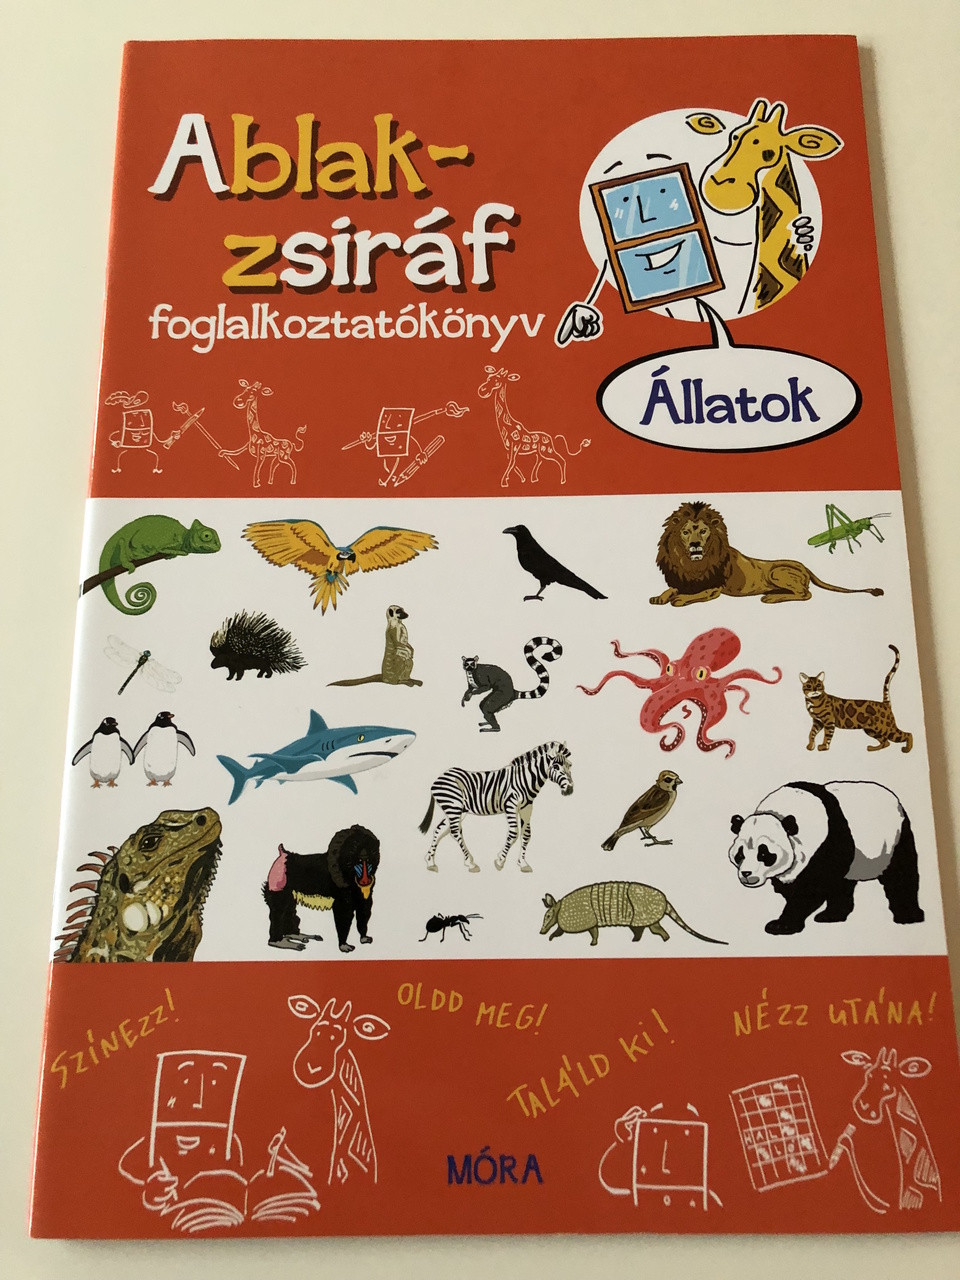 Ablak - Zsiráf könyvek / állatok - Foglalkoztatókönyv / Classic Hungarian  Picture Dictionary , ACTIVITY BOOK For Children about animals / Szinezz!  Oldd meg! Találd ki! Nézz utána! - bibleinmylanguage